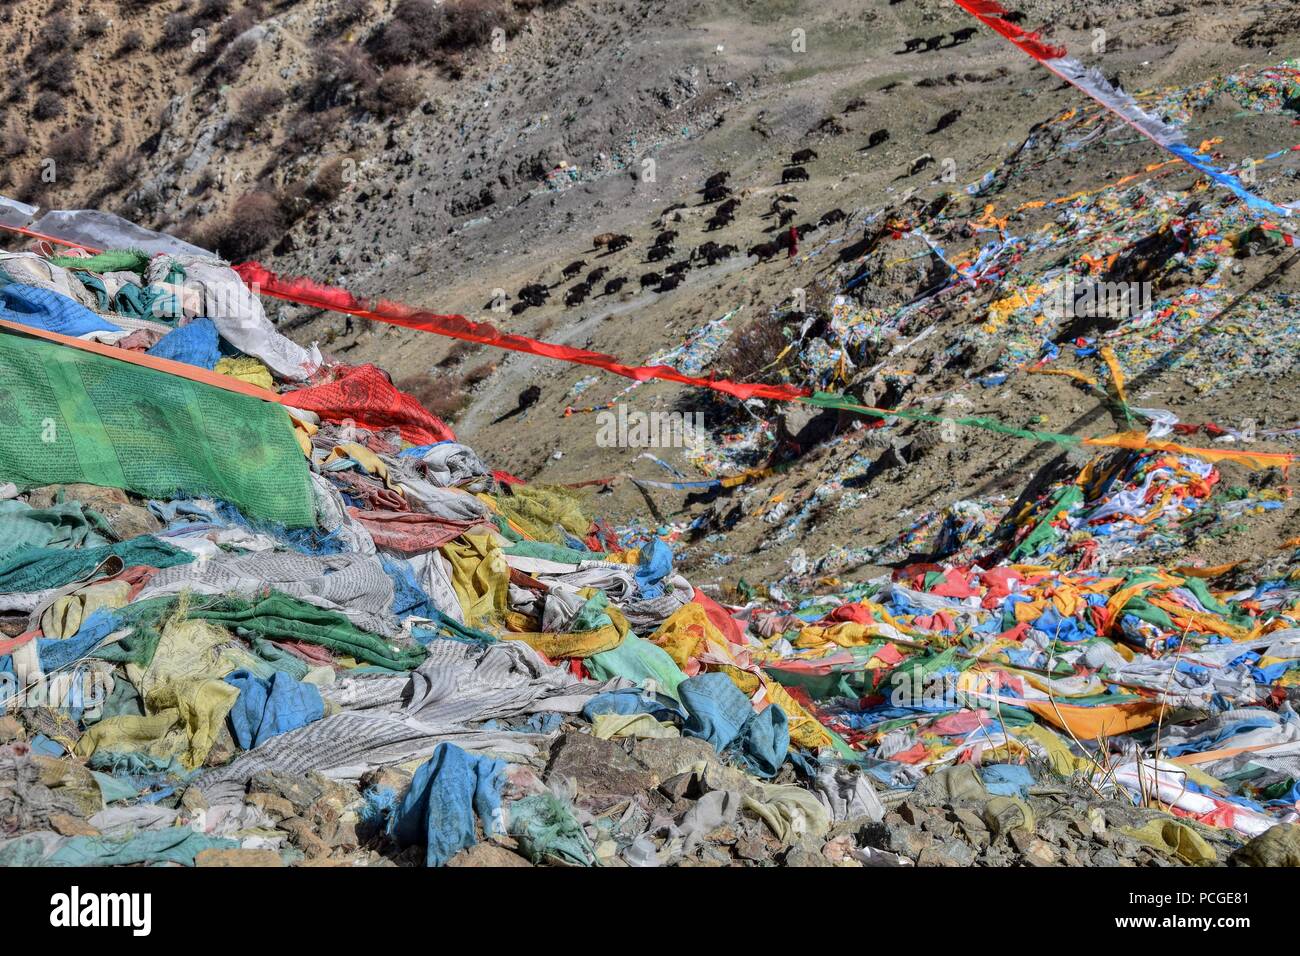 Preghiera tibetano bandiere rettangolari colorate vestiti, utilizzare per benedire la campagna circostante, al vento, allevamento di yak in background. Foto Stock